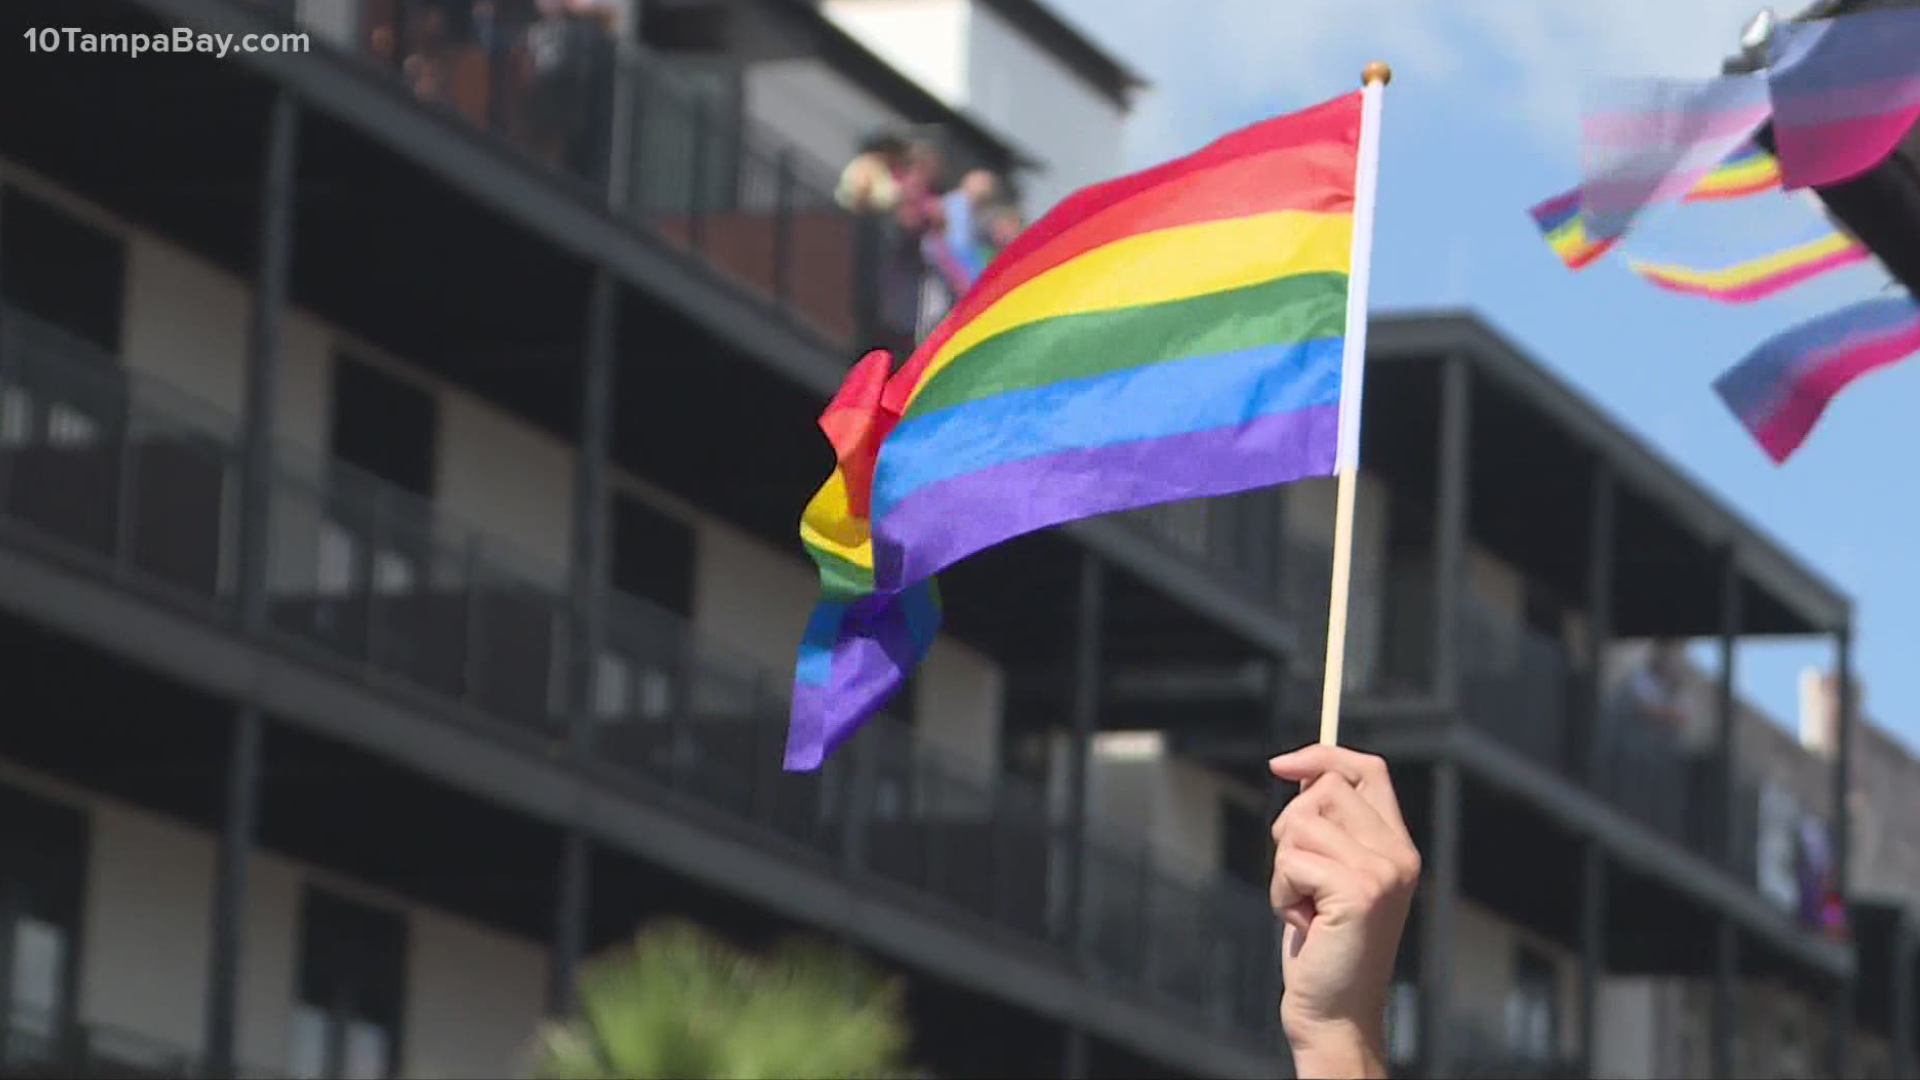 Tampa Pride returns in 2021 